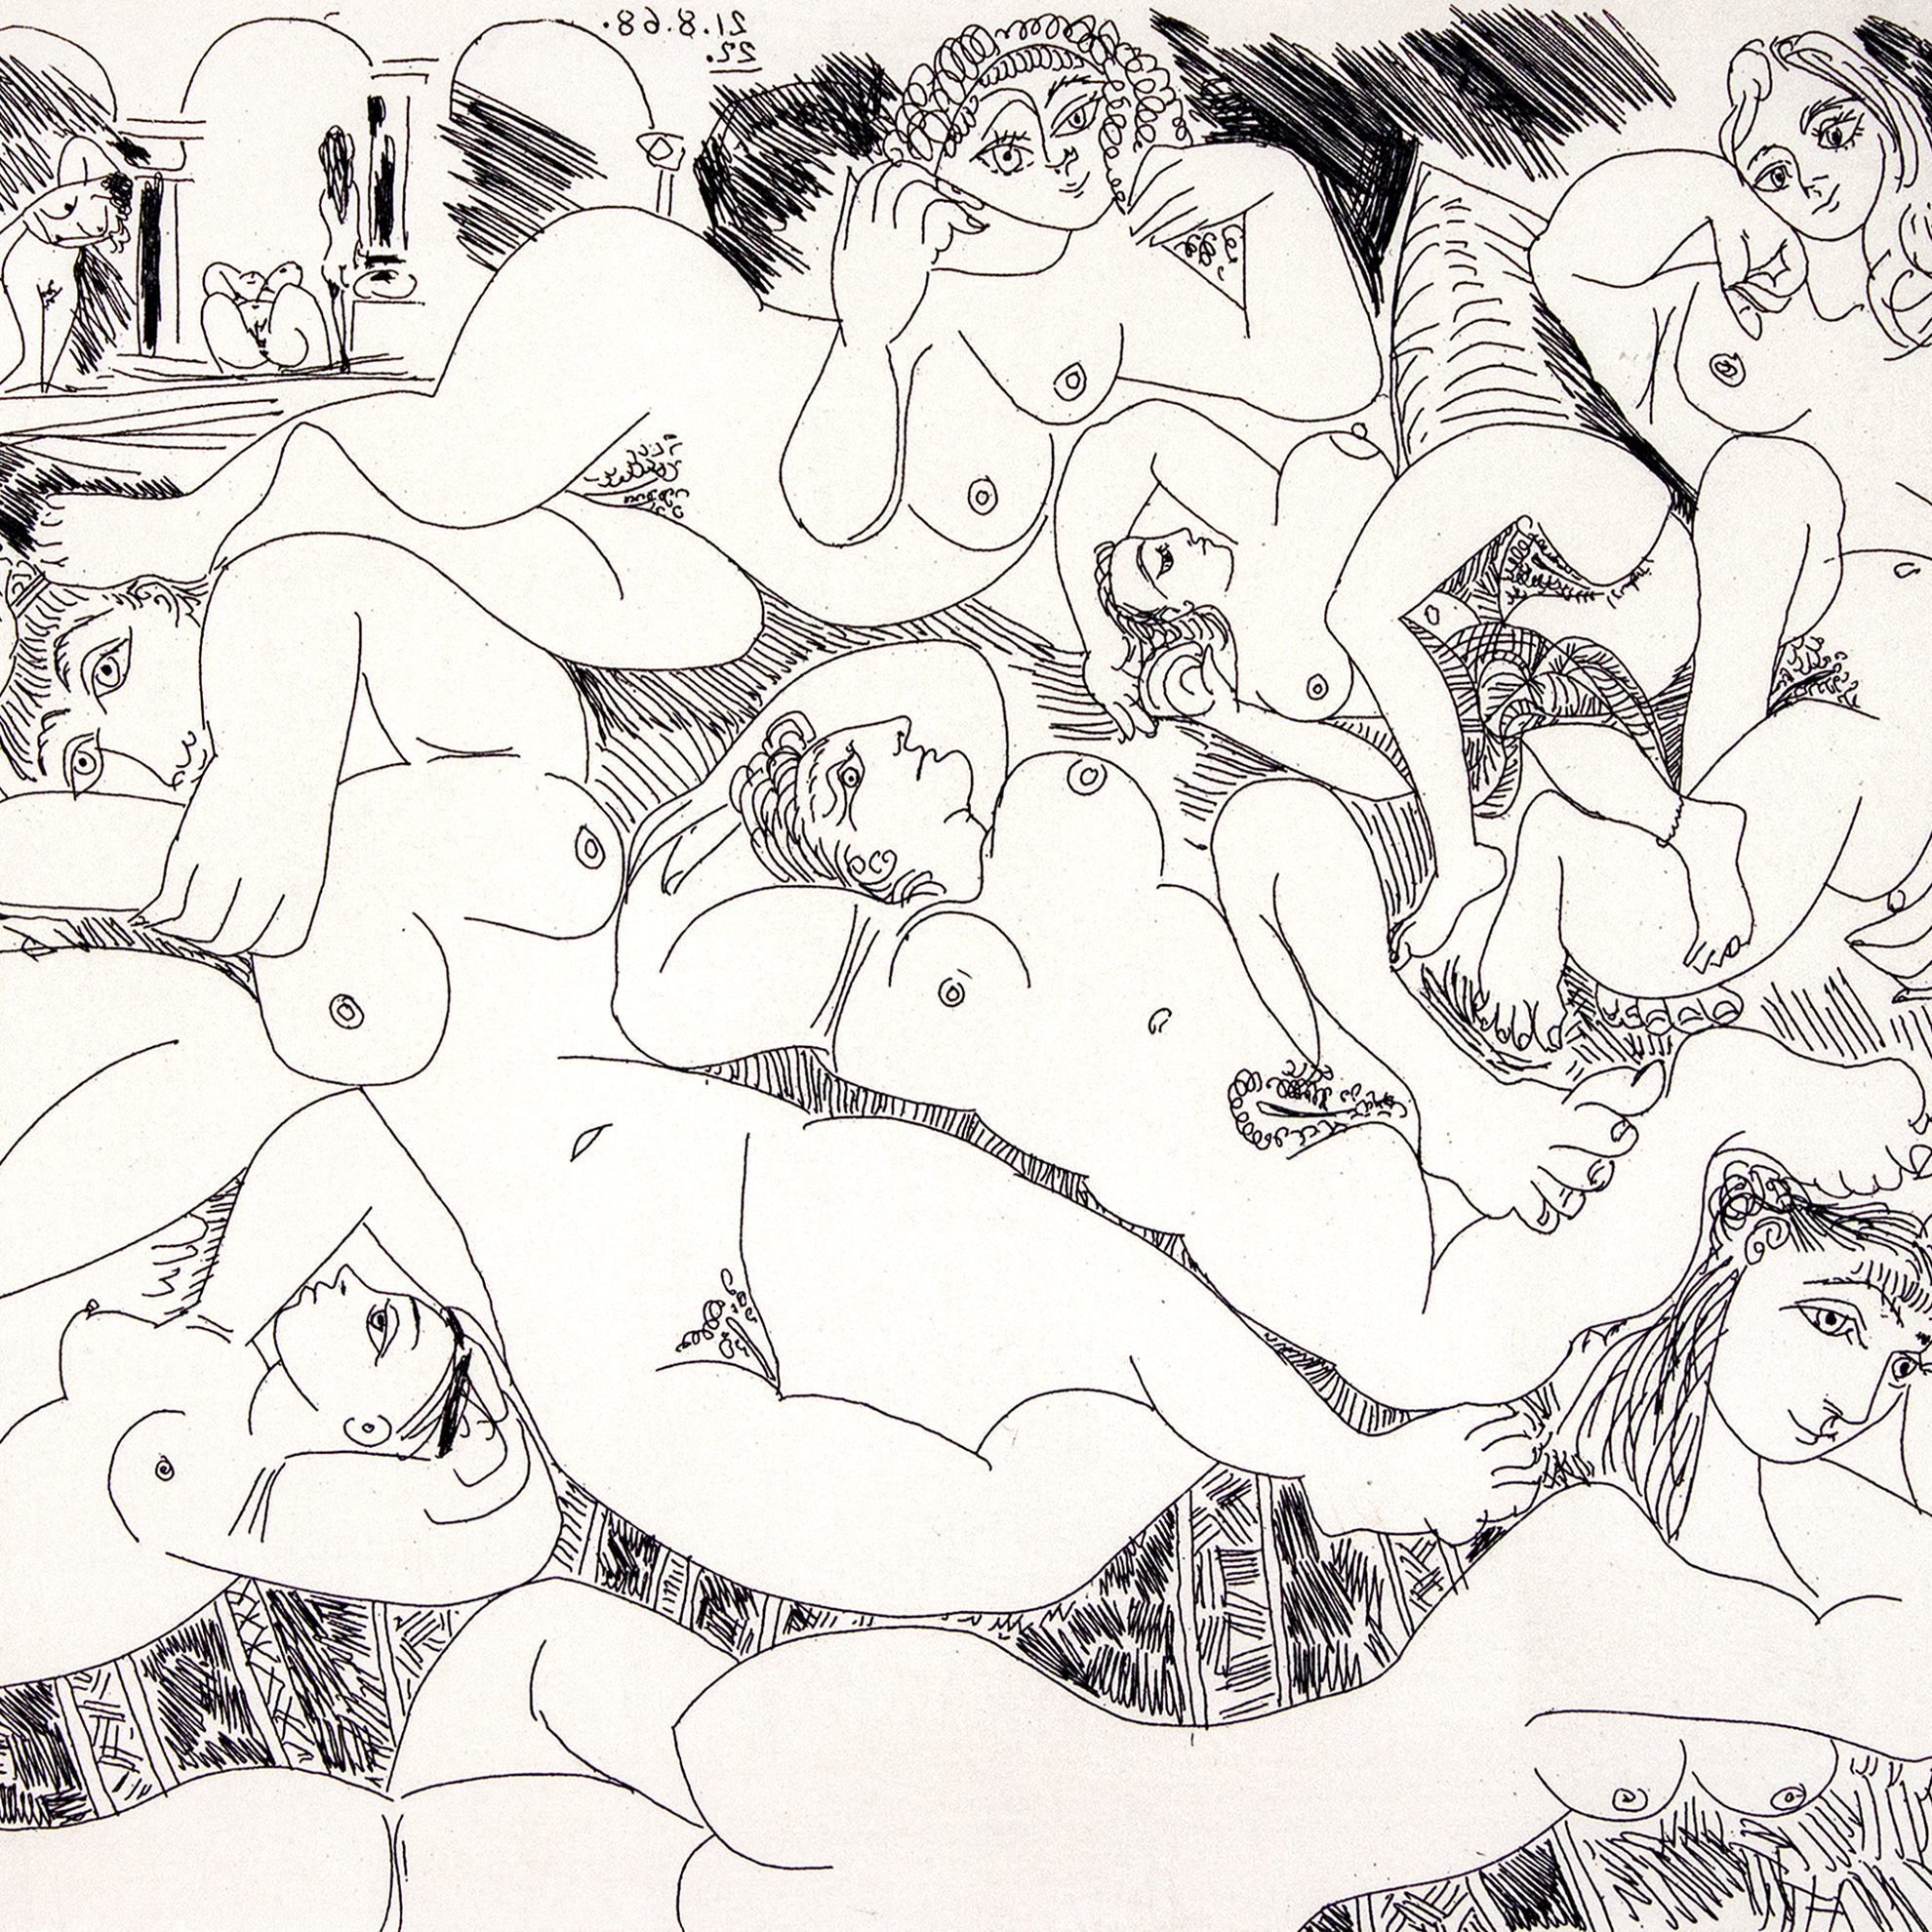 Le ultime incisioni erotiche del grande Picasso